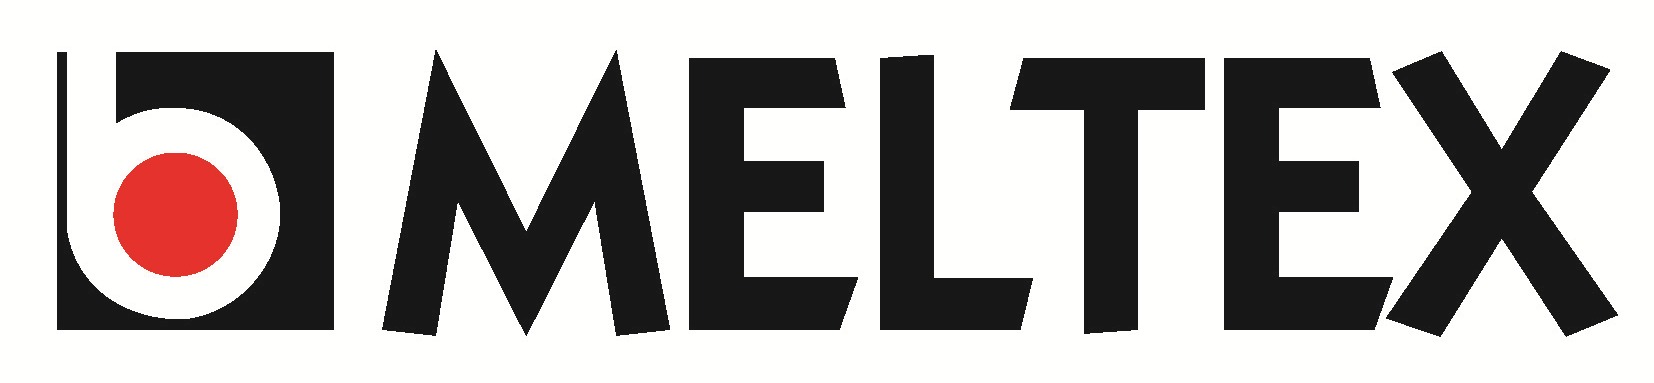 meltex logo jpg